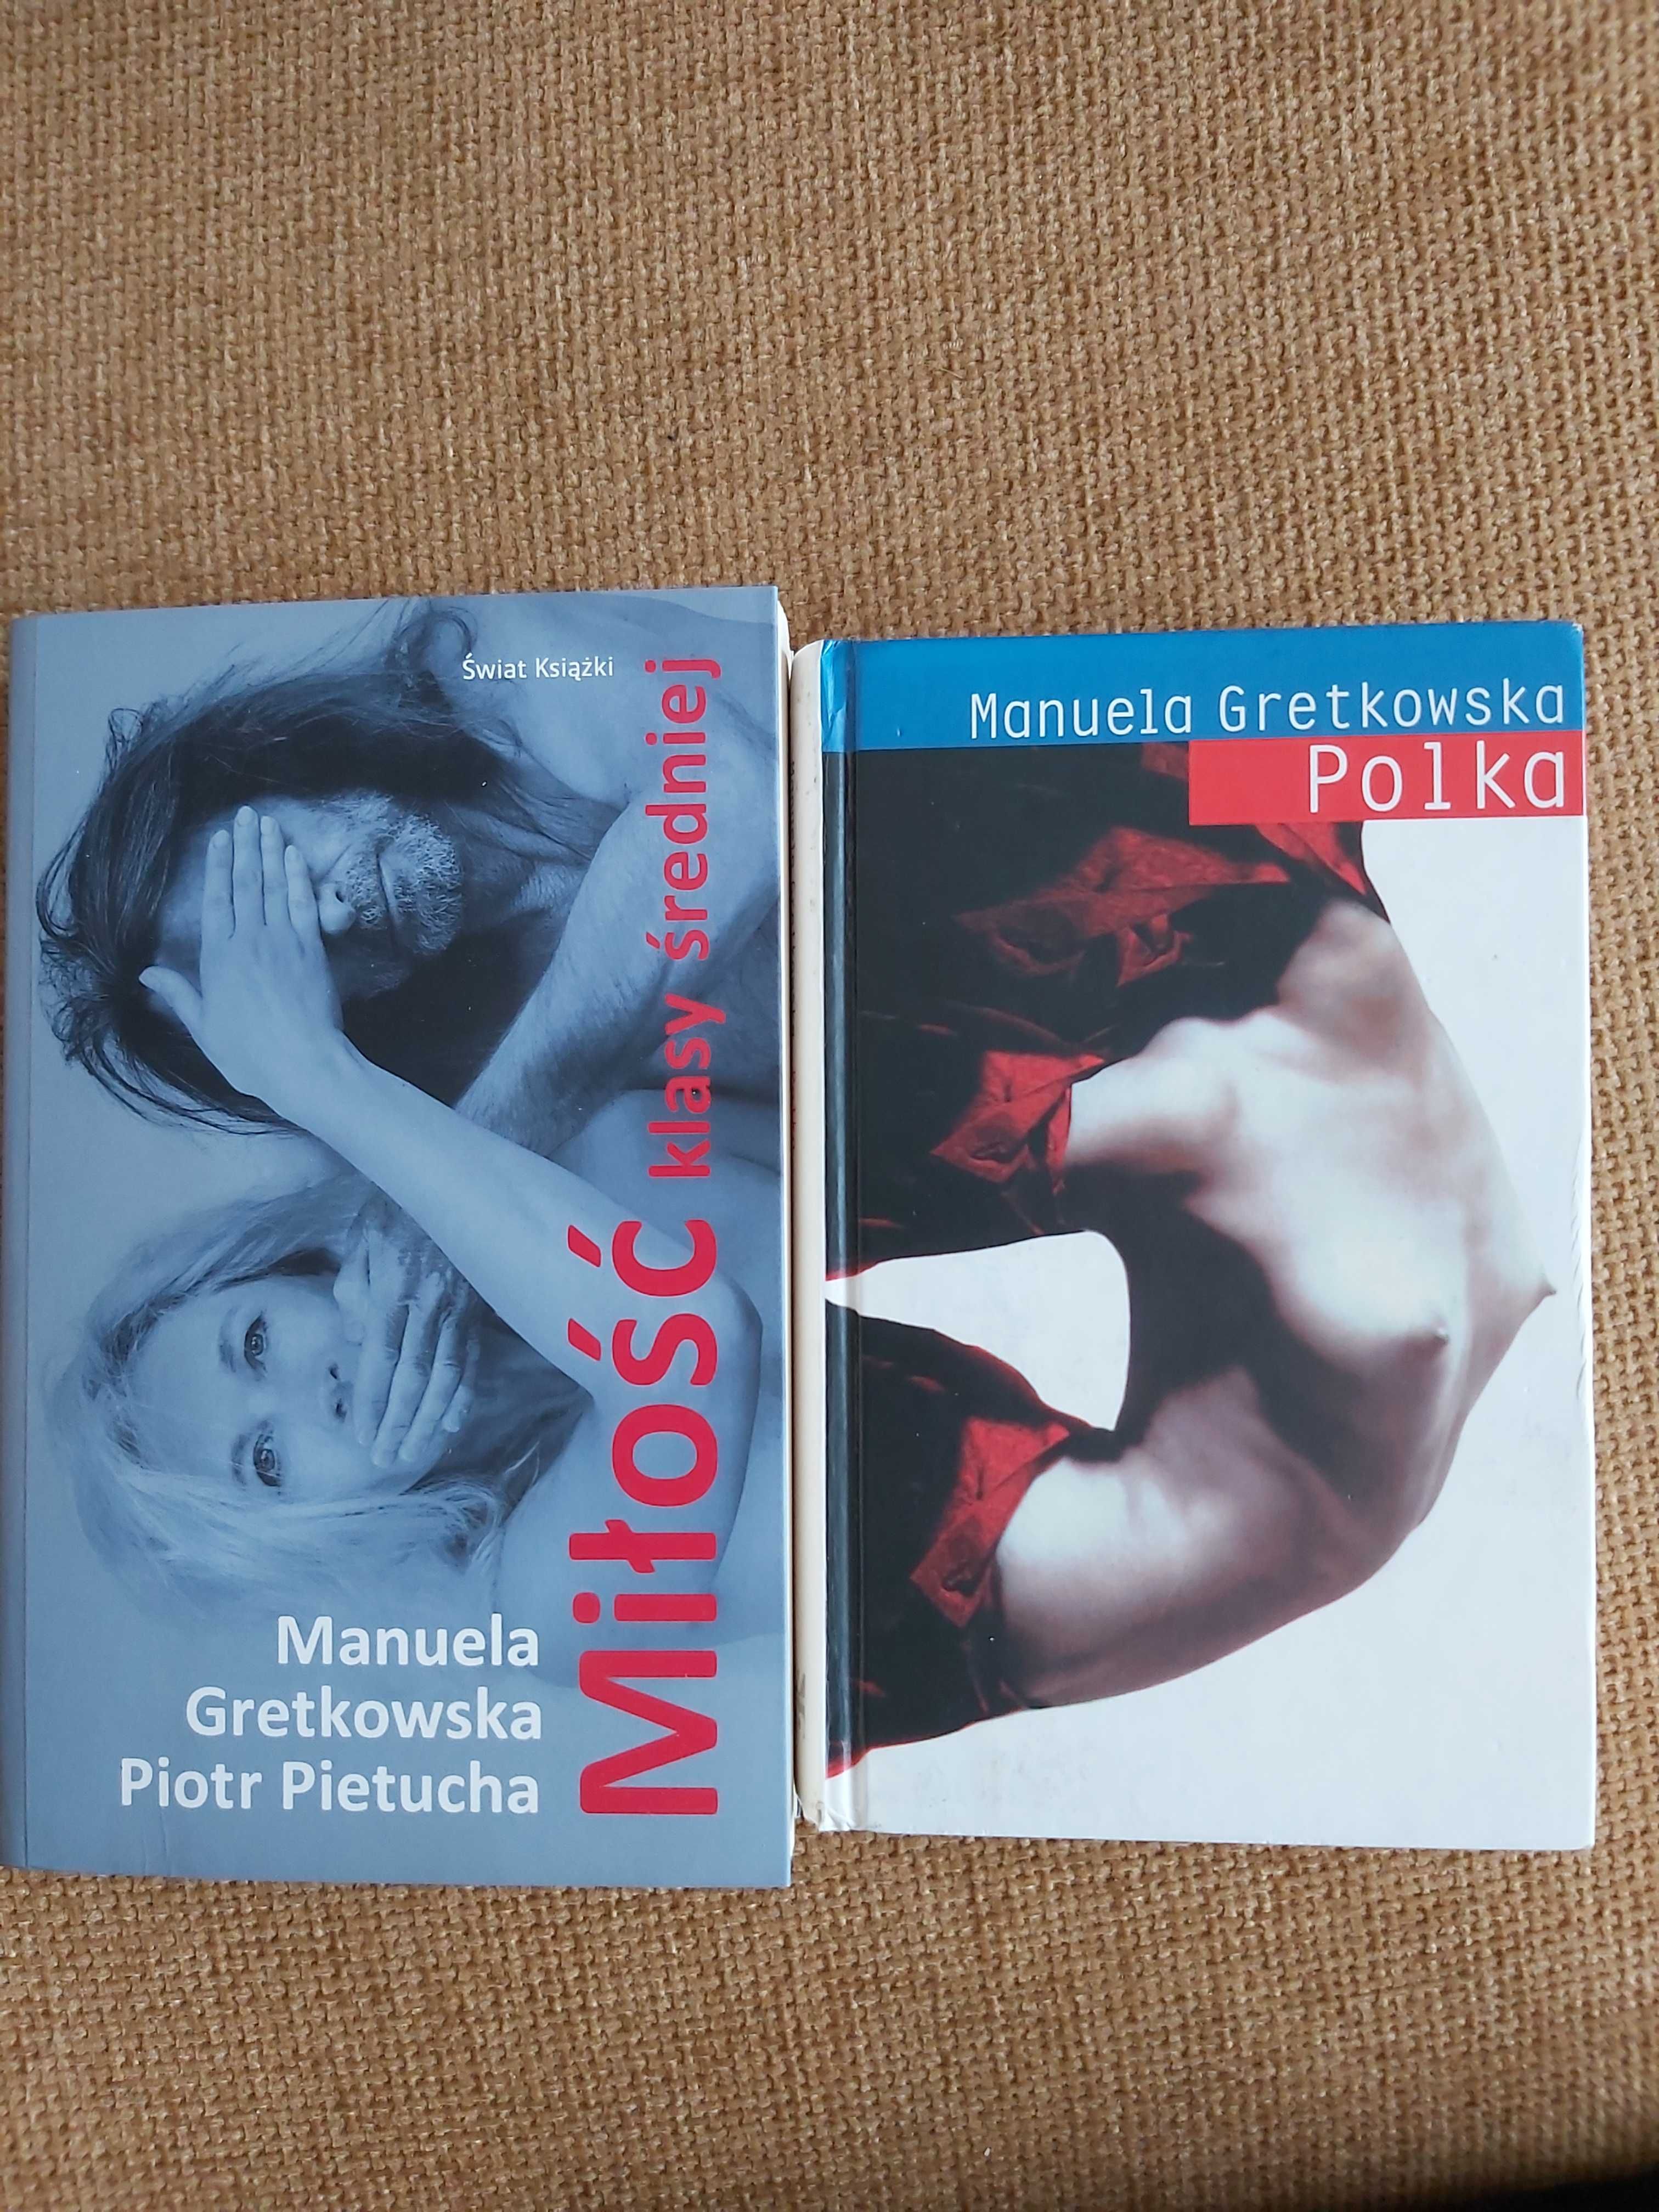 Miłość klasy średniej Manuela Gretkowska i P. Pietucha, Polka